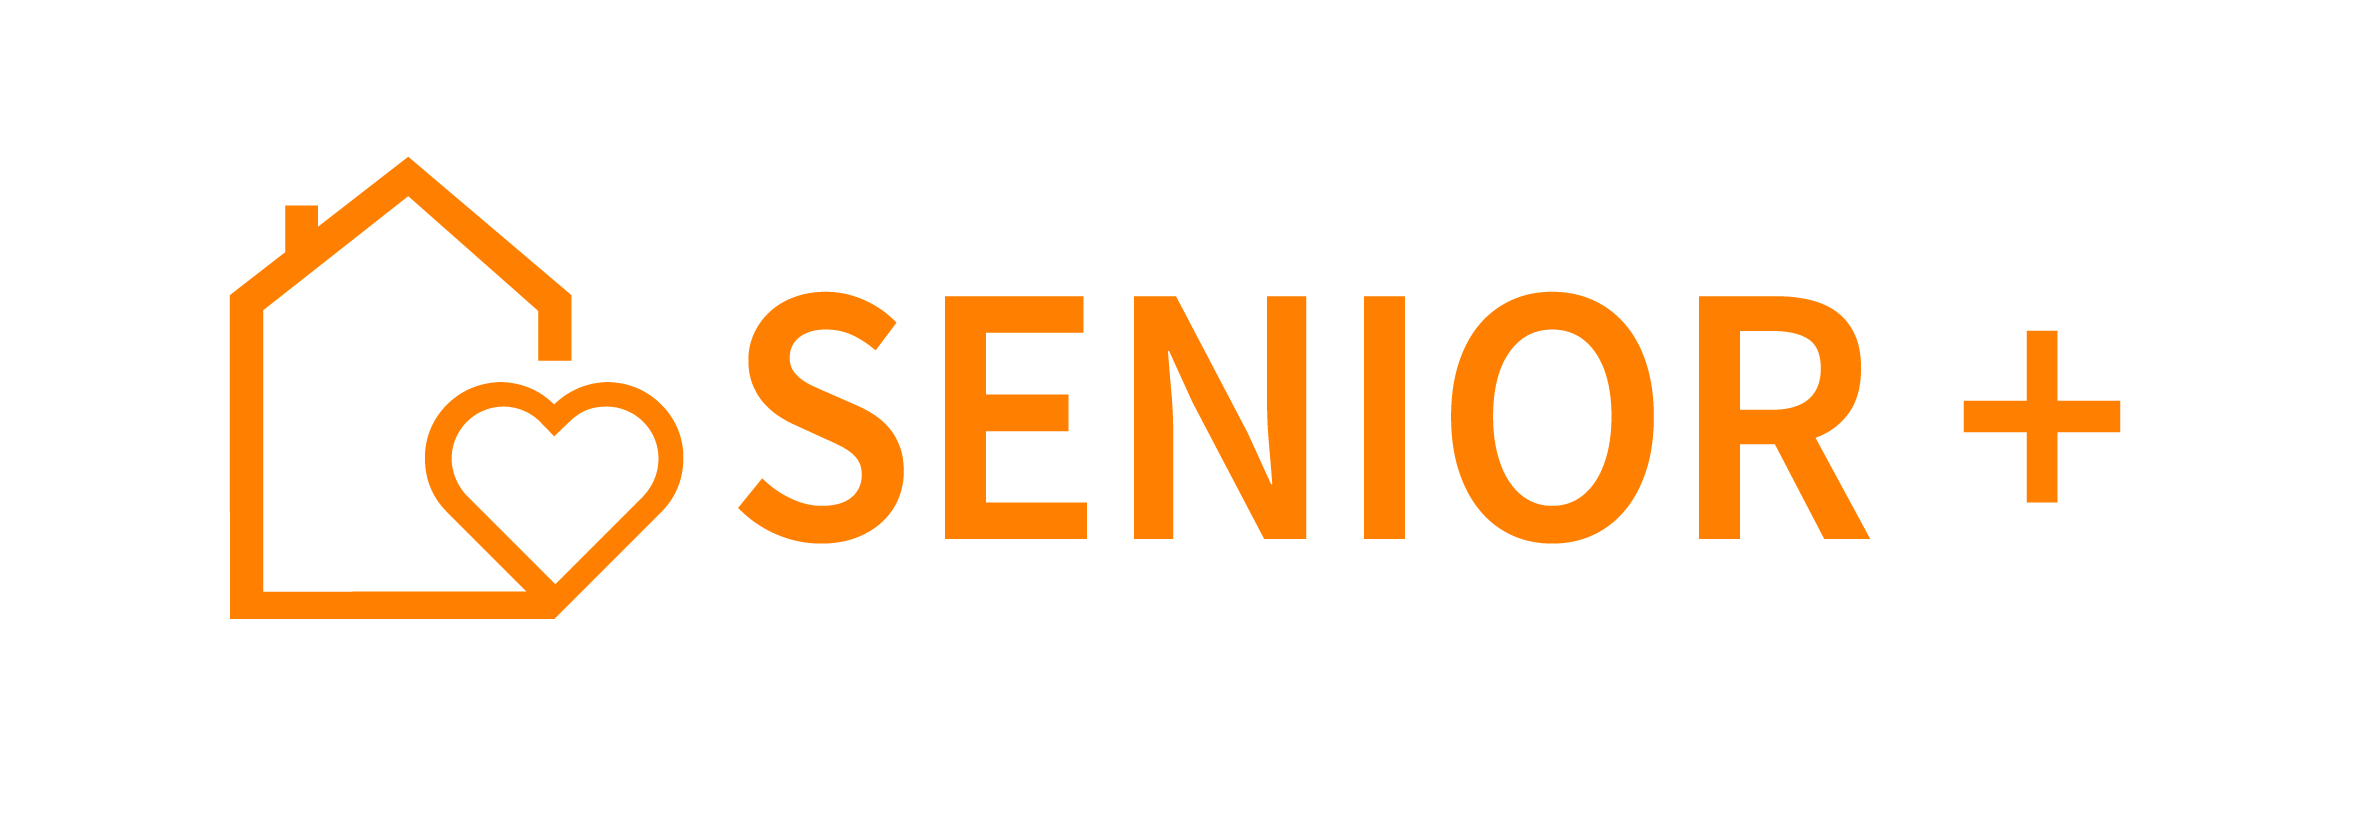 senior-plus-logo.jpg (716 KB)